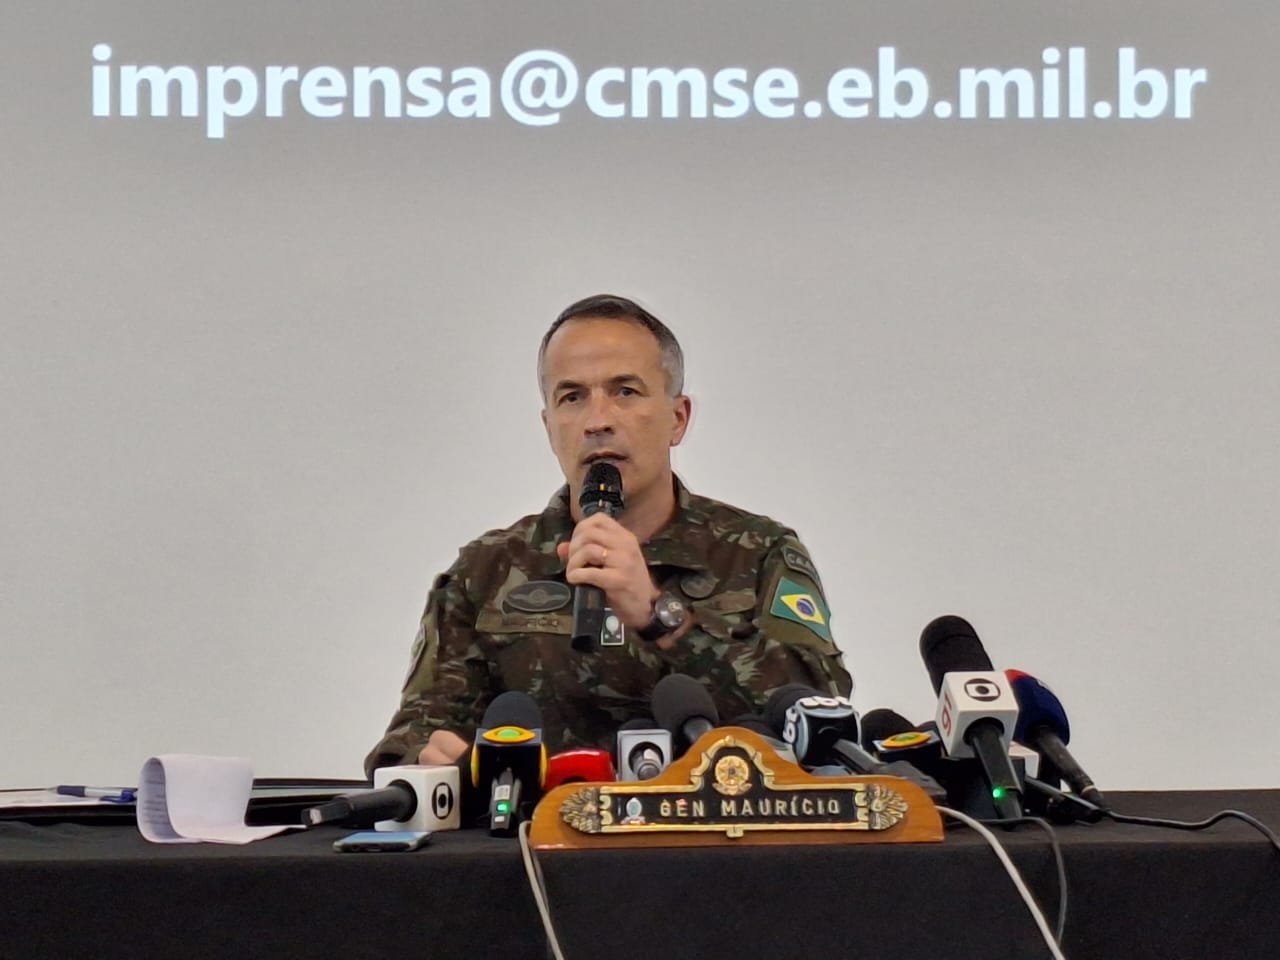 Imagem colorida mostra o General de Brigada Maurício Vieira Gama, Chefe do Estado-Maior do CMSE, um homem branco, vestido com uniforme do exército, com vários microfones à sua frente - Metrópoles